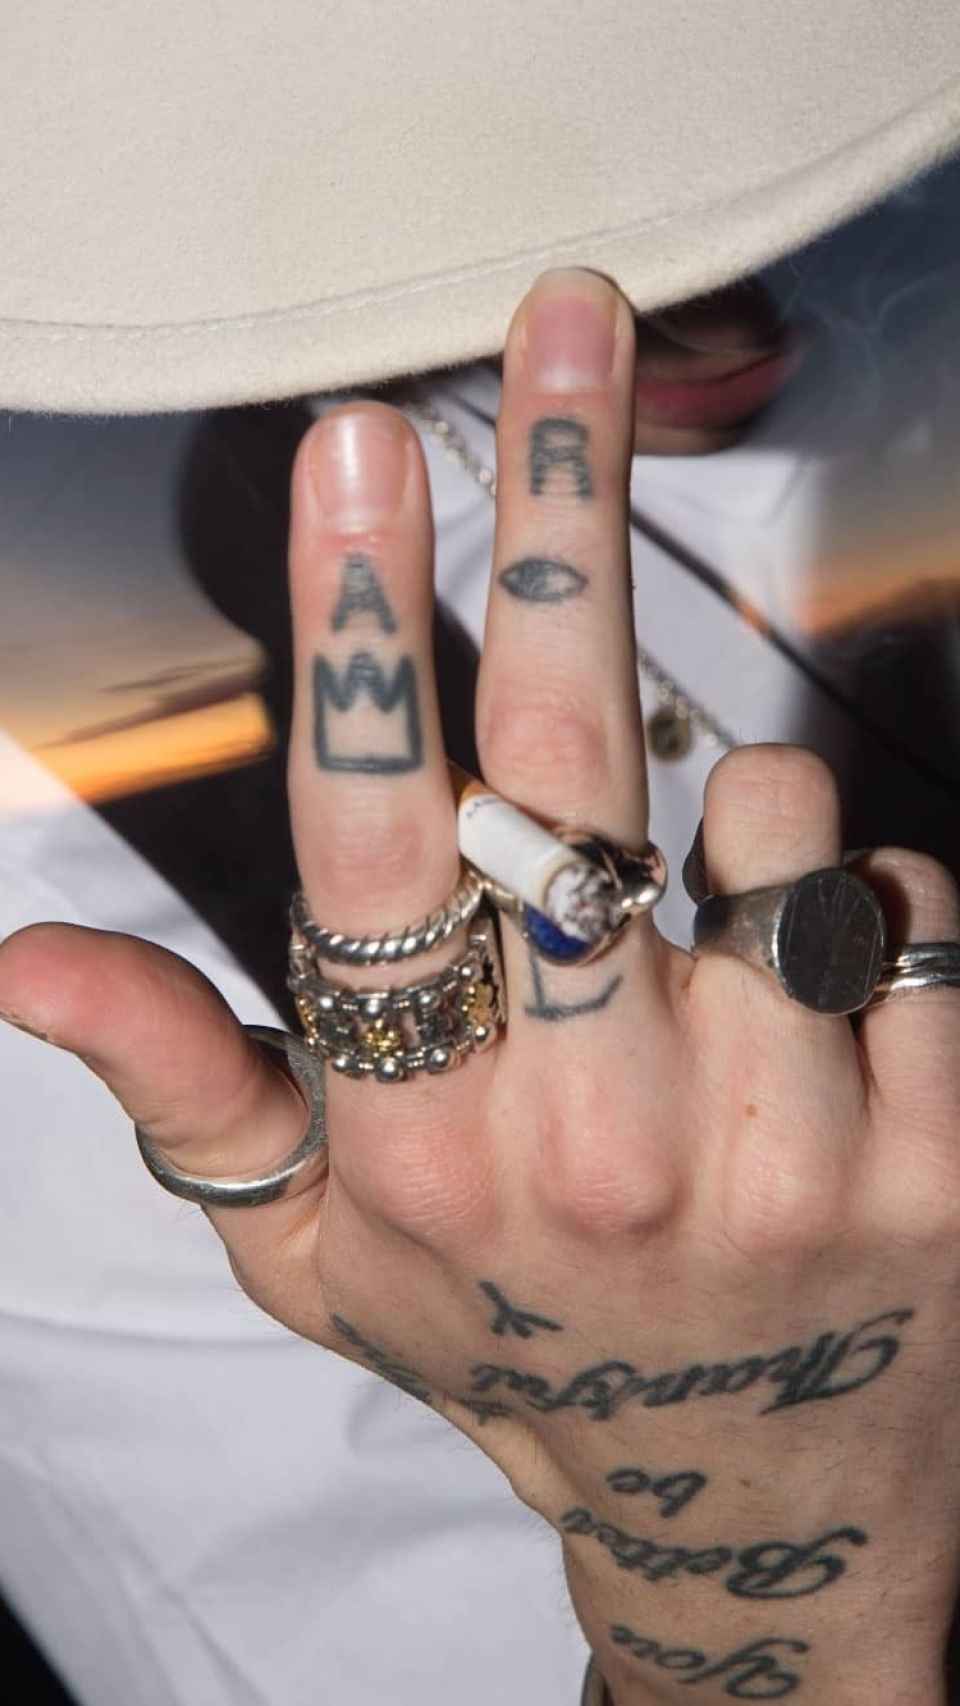 Detalle de uno de los tatuajes de Juan Alfonso Milán: una corona en su dedo índice.